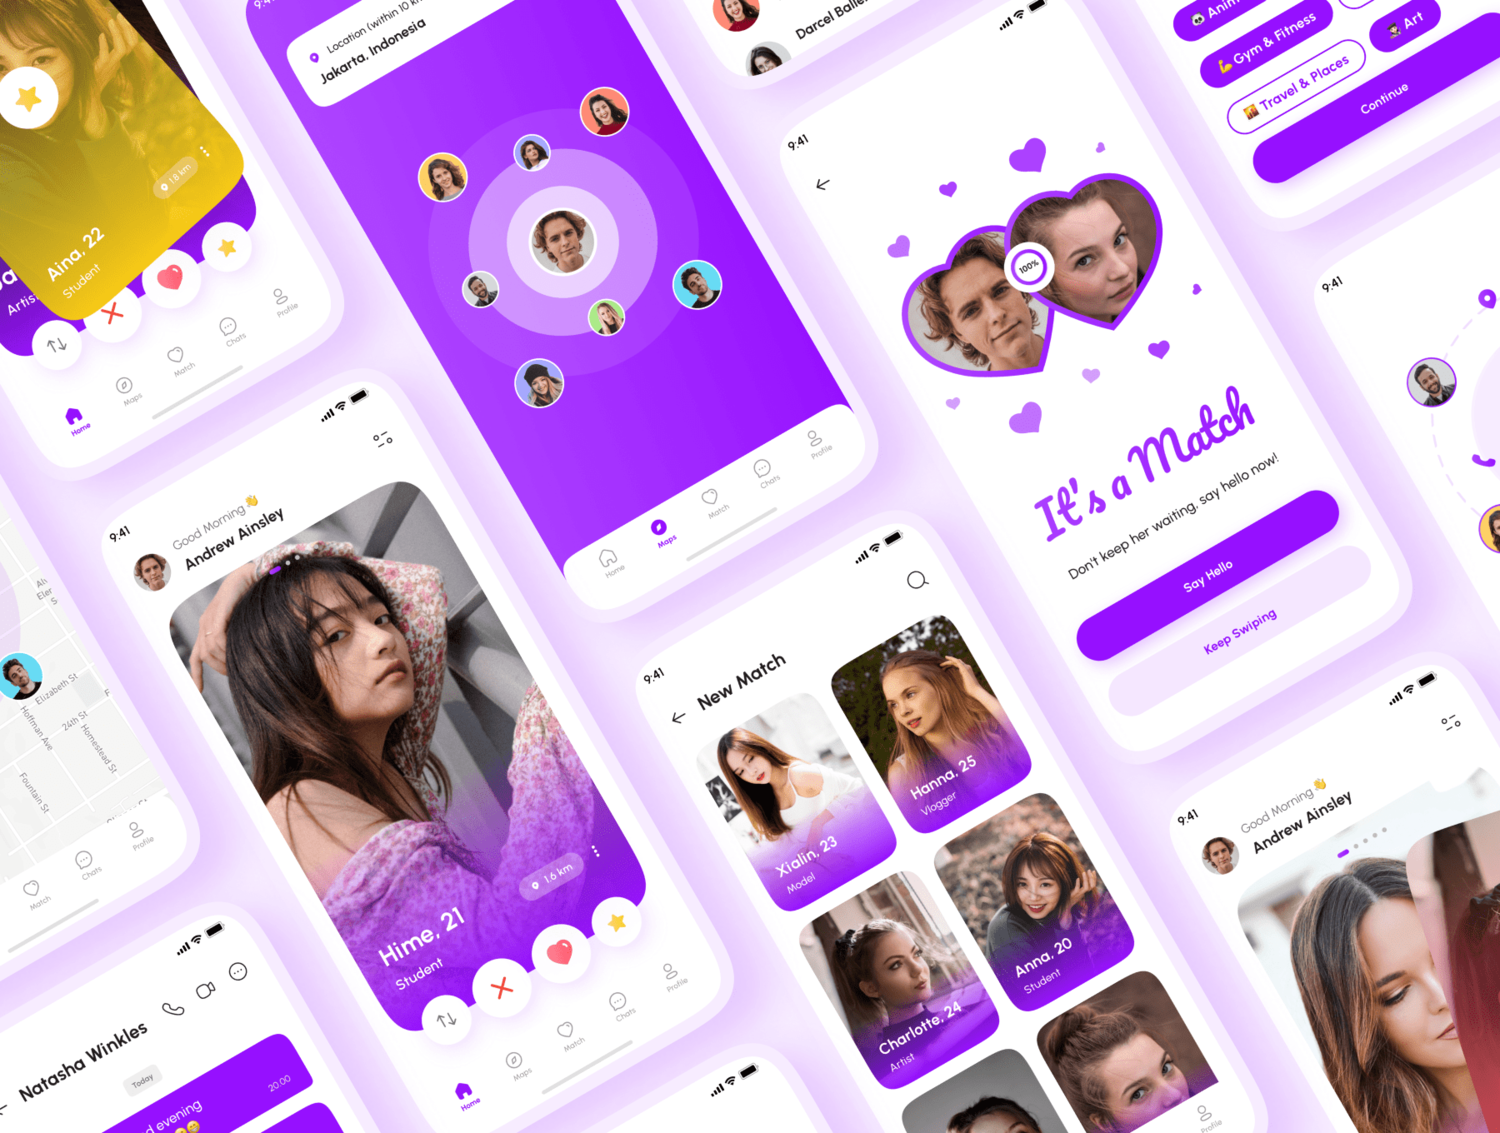 3528 130屏国外在线交友聊天约会见面社交媒体app界面设计紫色ui套件模板 Hume – Dating App UI Kit